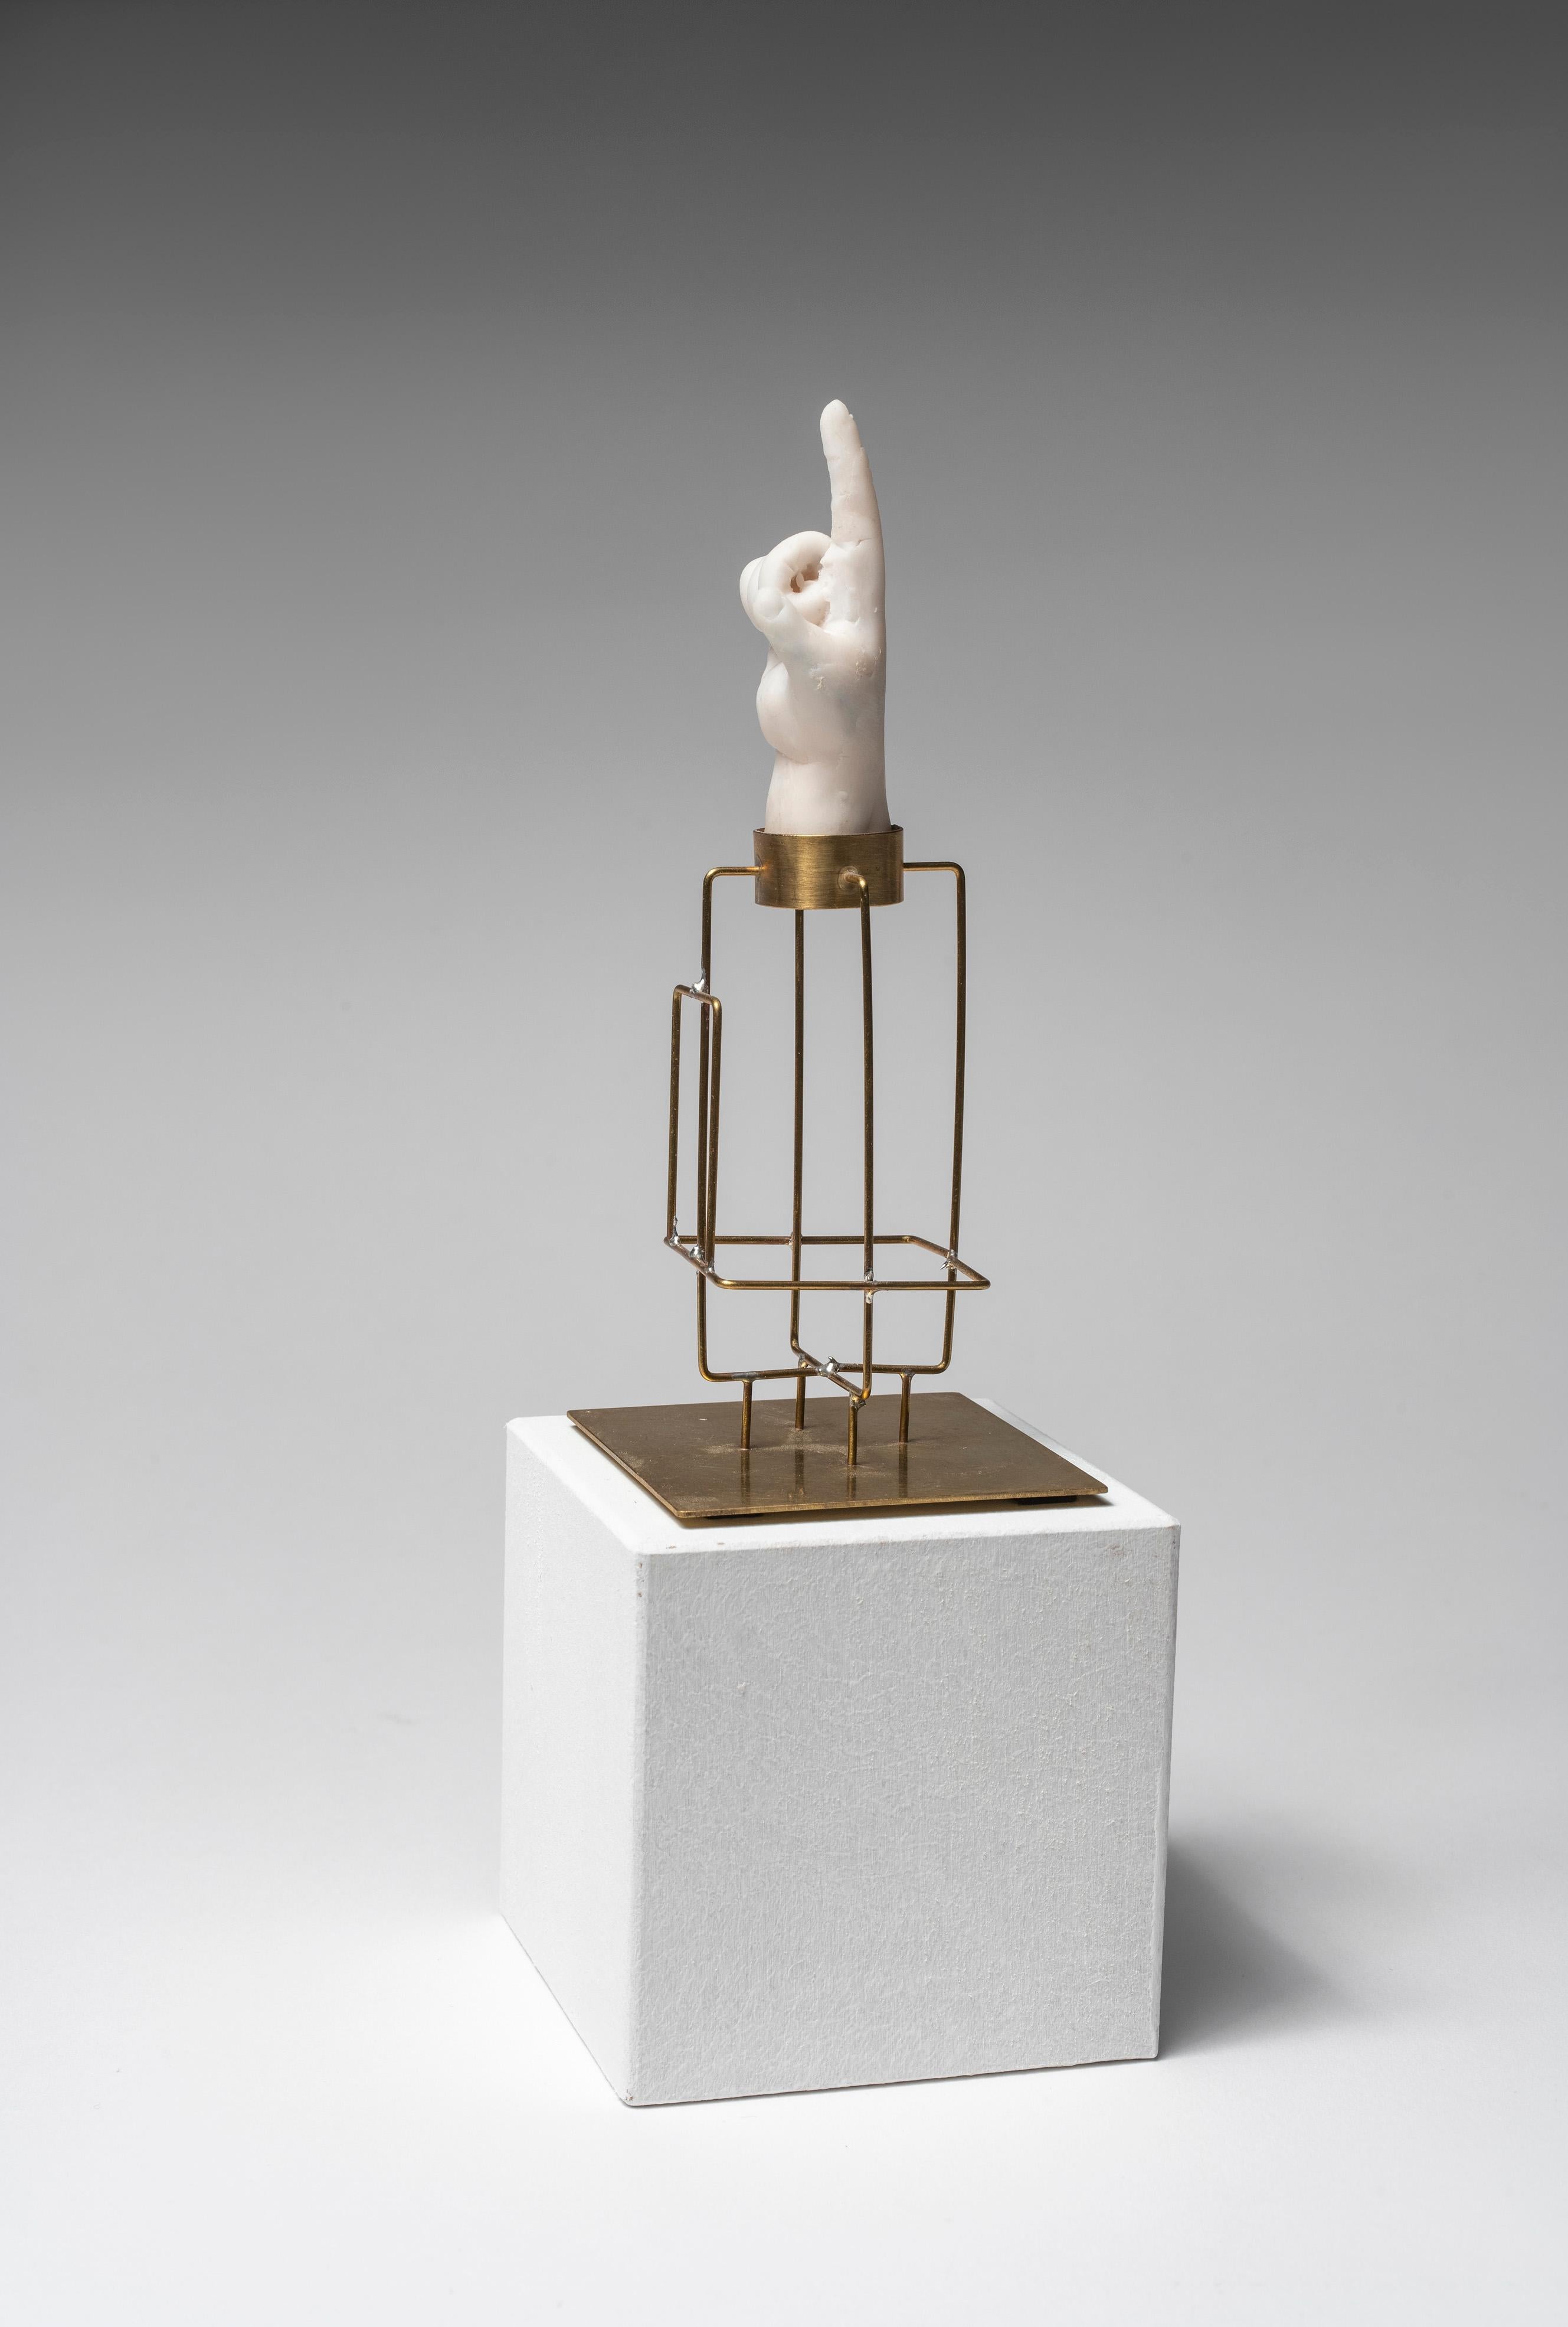 Sculpture de la main : « Piétite principale reliquaire 2 » - Contemporain Mixed Media Art par Agnes Baillon & Eric de Dormael